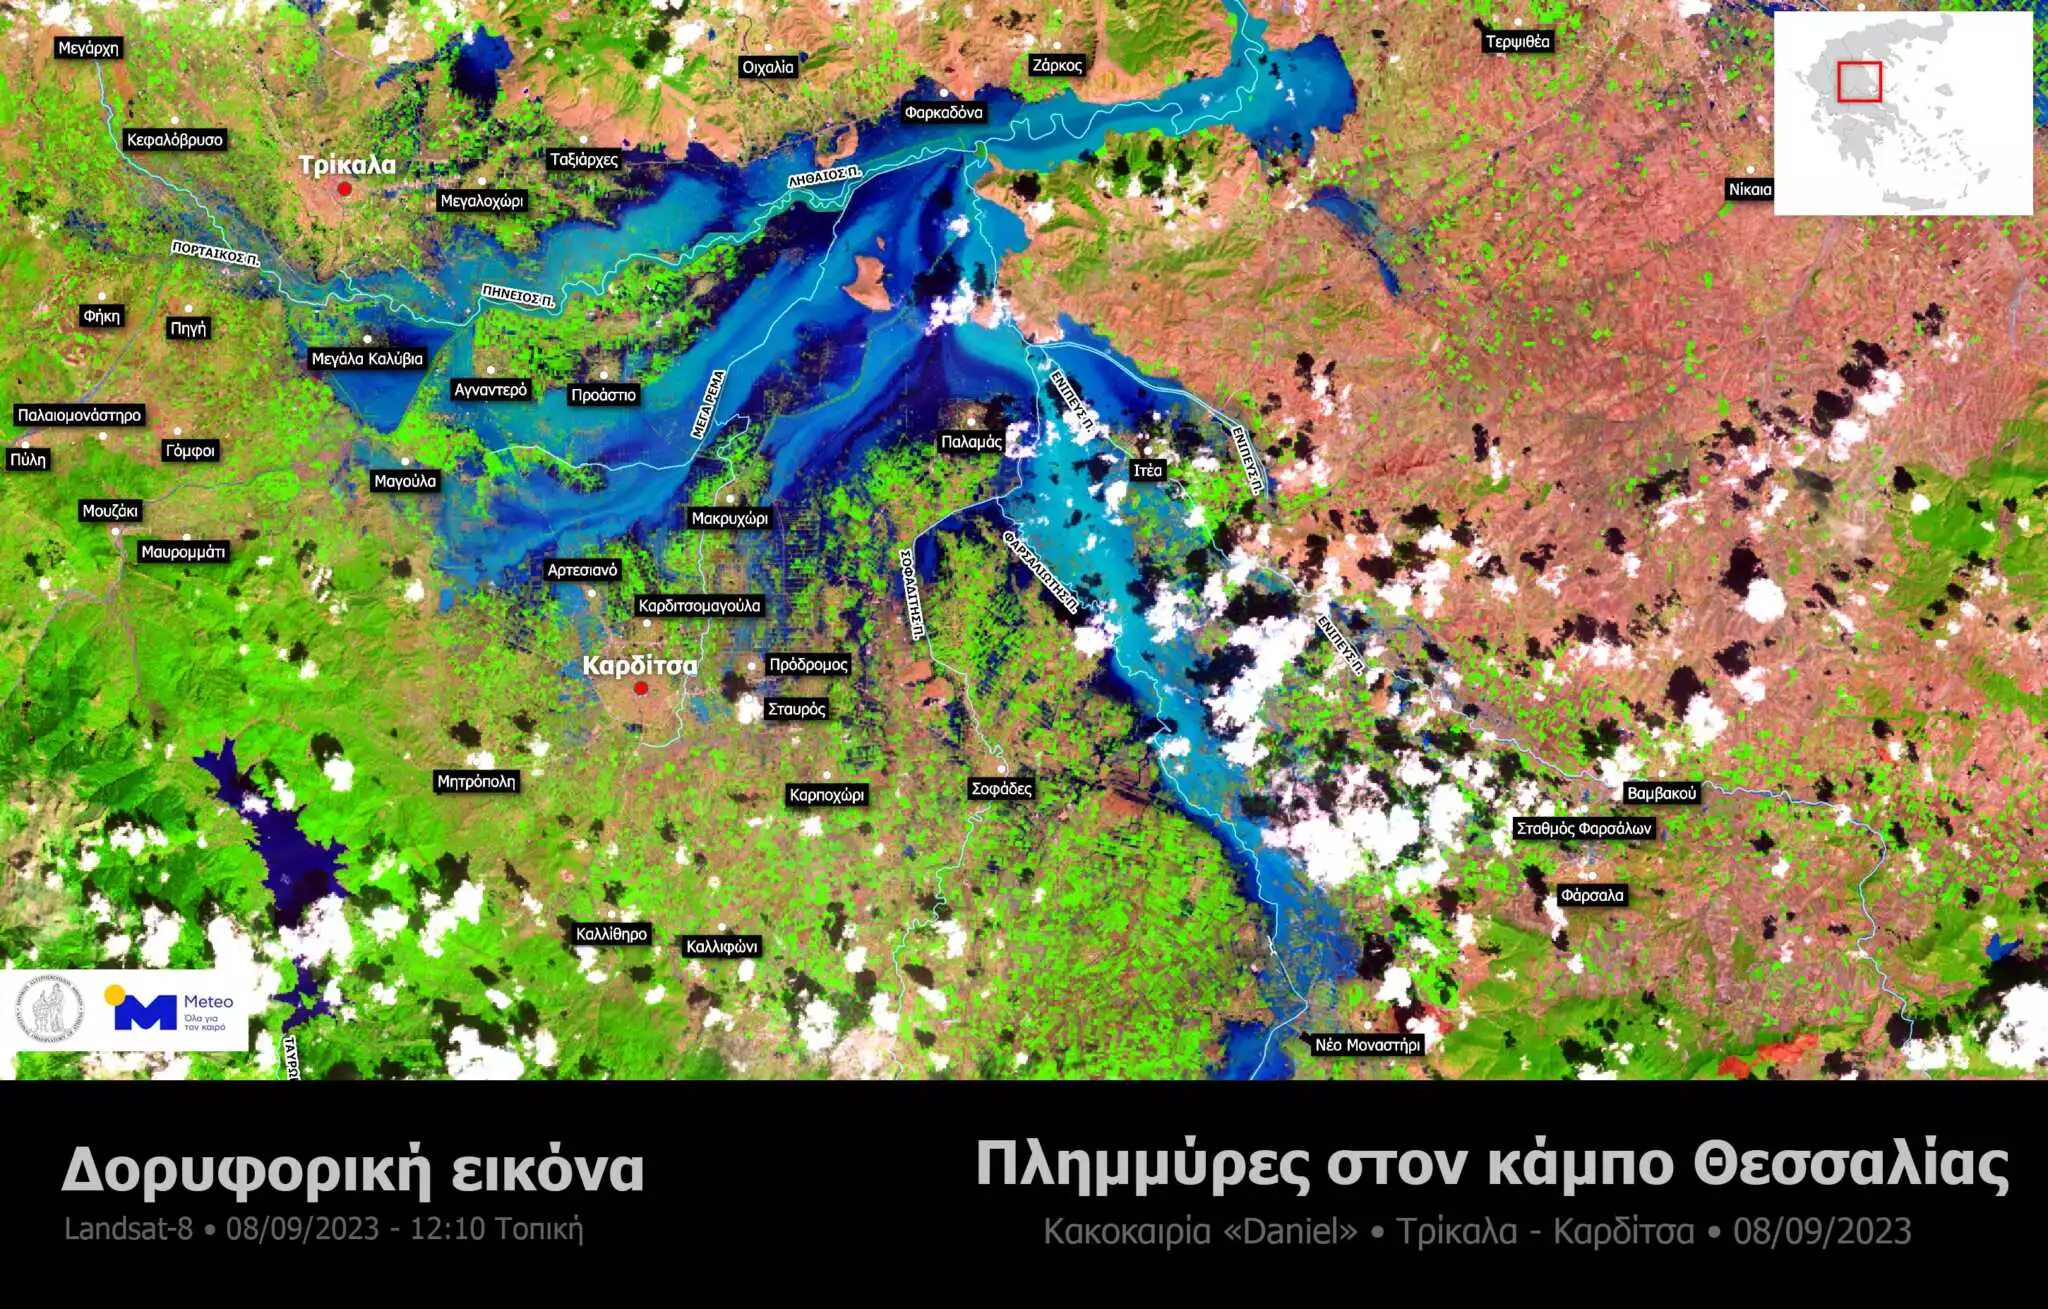 Θεσσαλικός Κάμπος: Το πριν και το μετά- Όλη η καταστροφή μέσα από δορυφορικές εικόνες